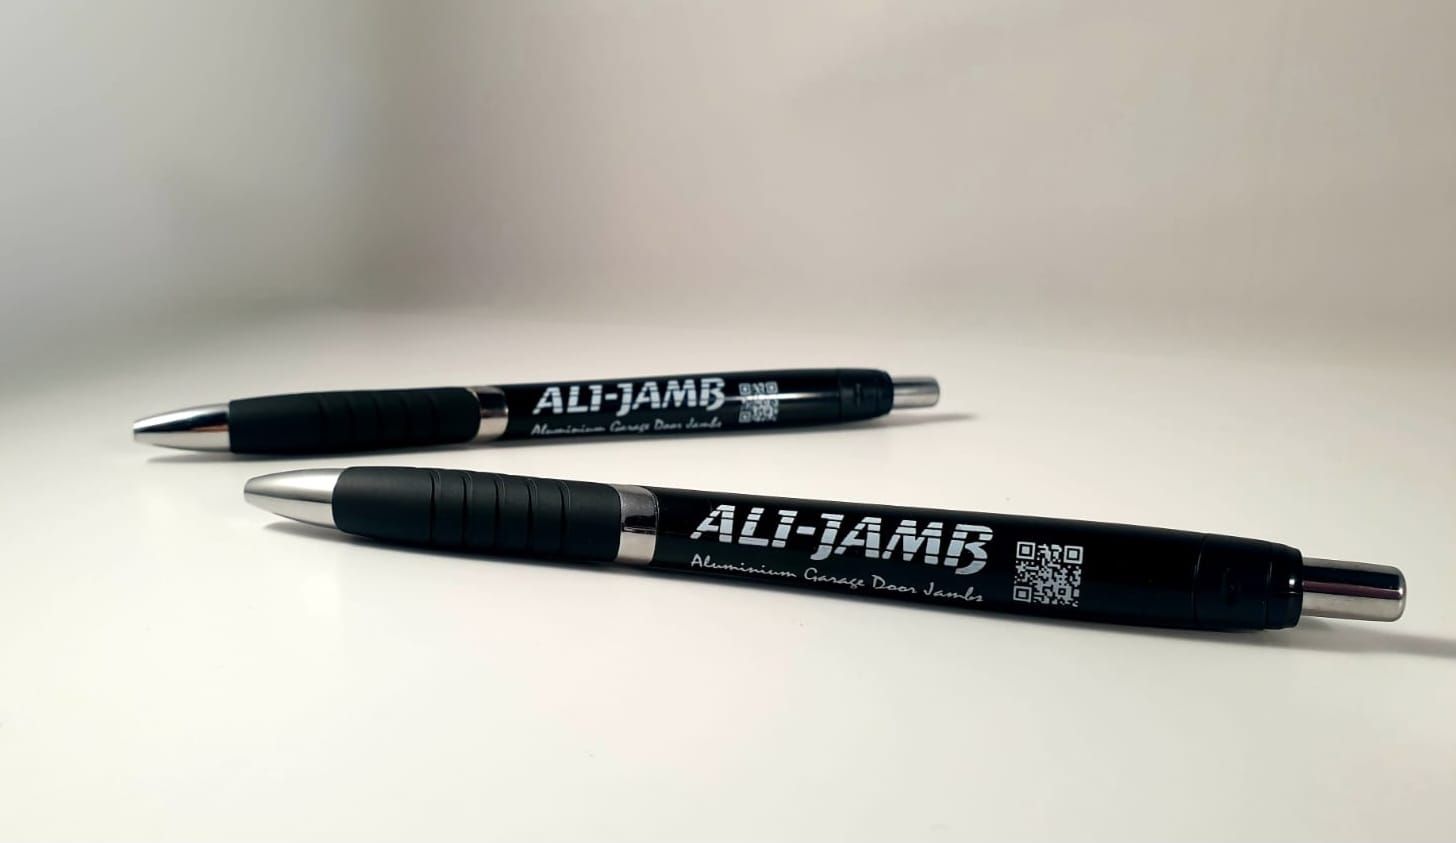 Ali Jamb Branded Pens